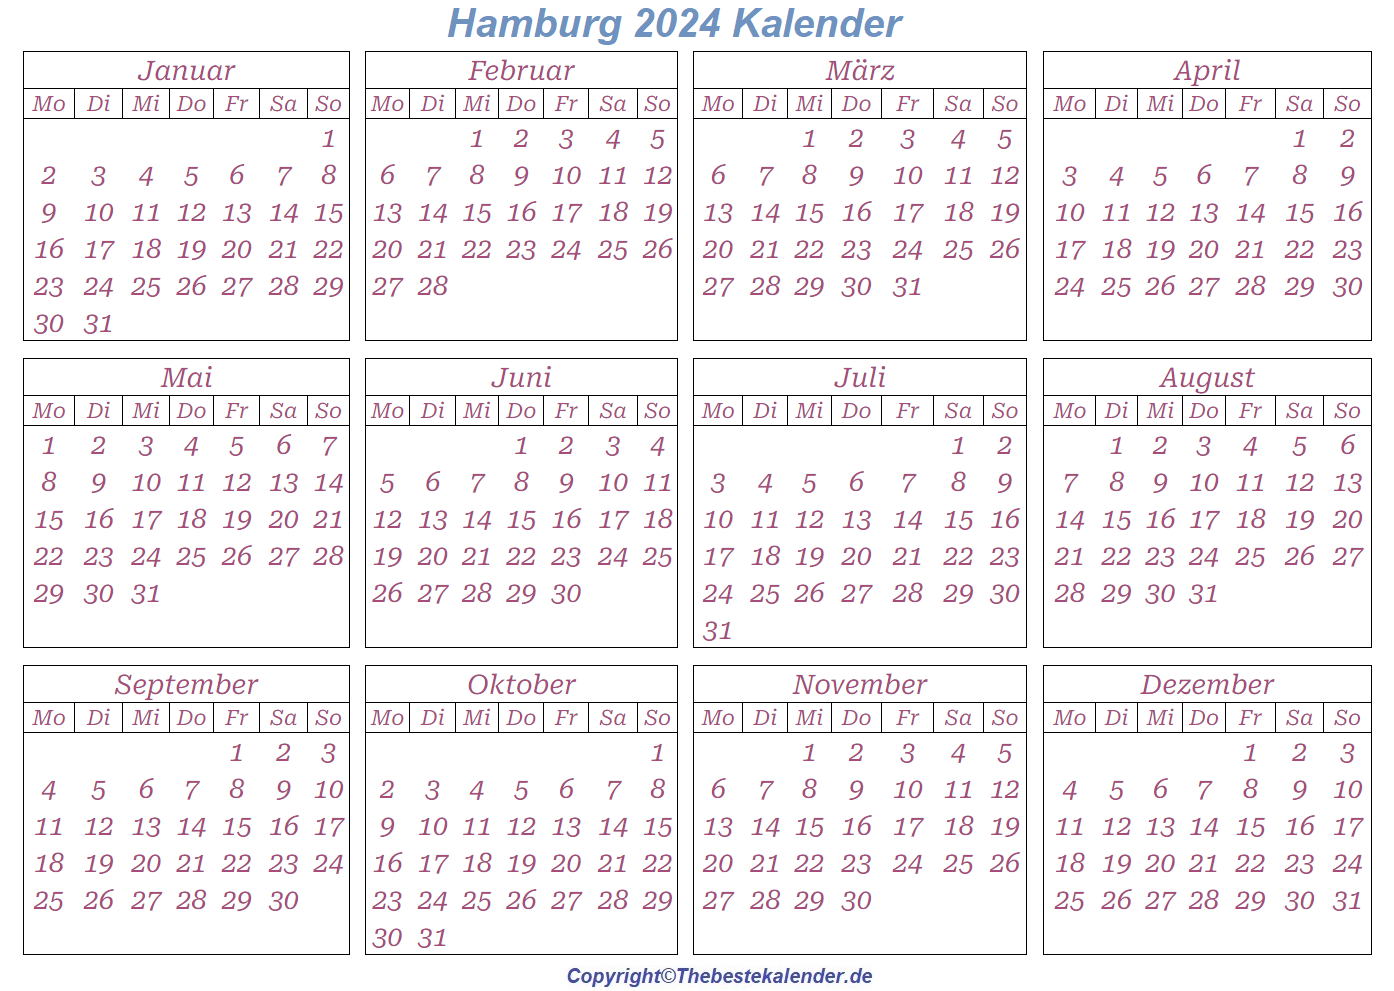 Wann Sind Die Sommerferien Hamburg 2024?